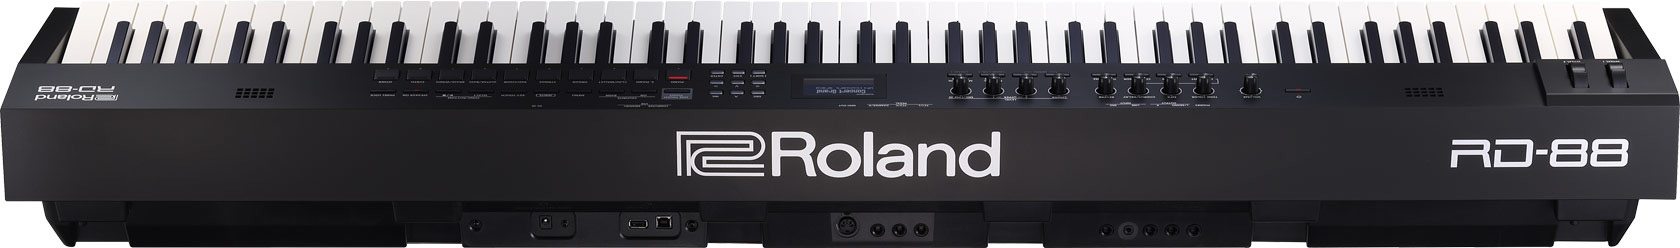 Roland RD 88 stage piano SuperNATURAL Piano E Piano ZEN Core rear